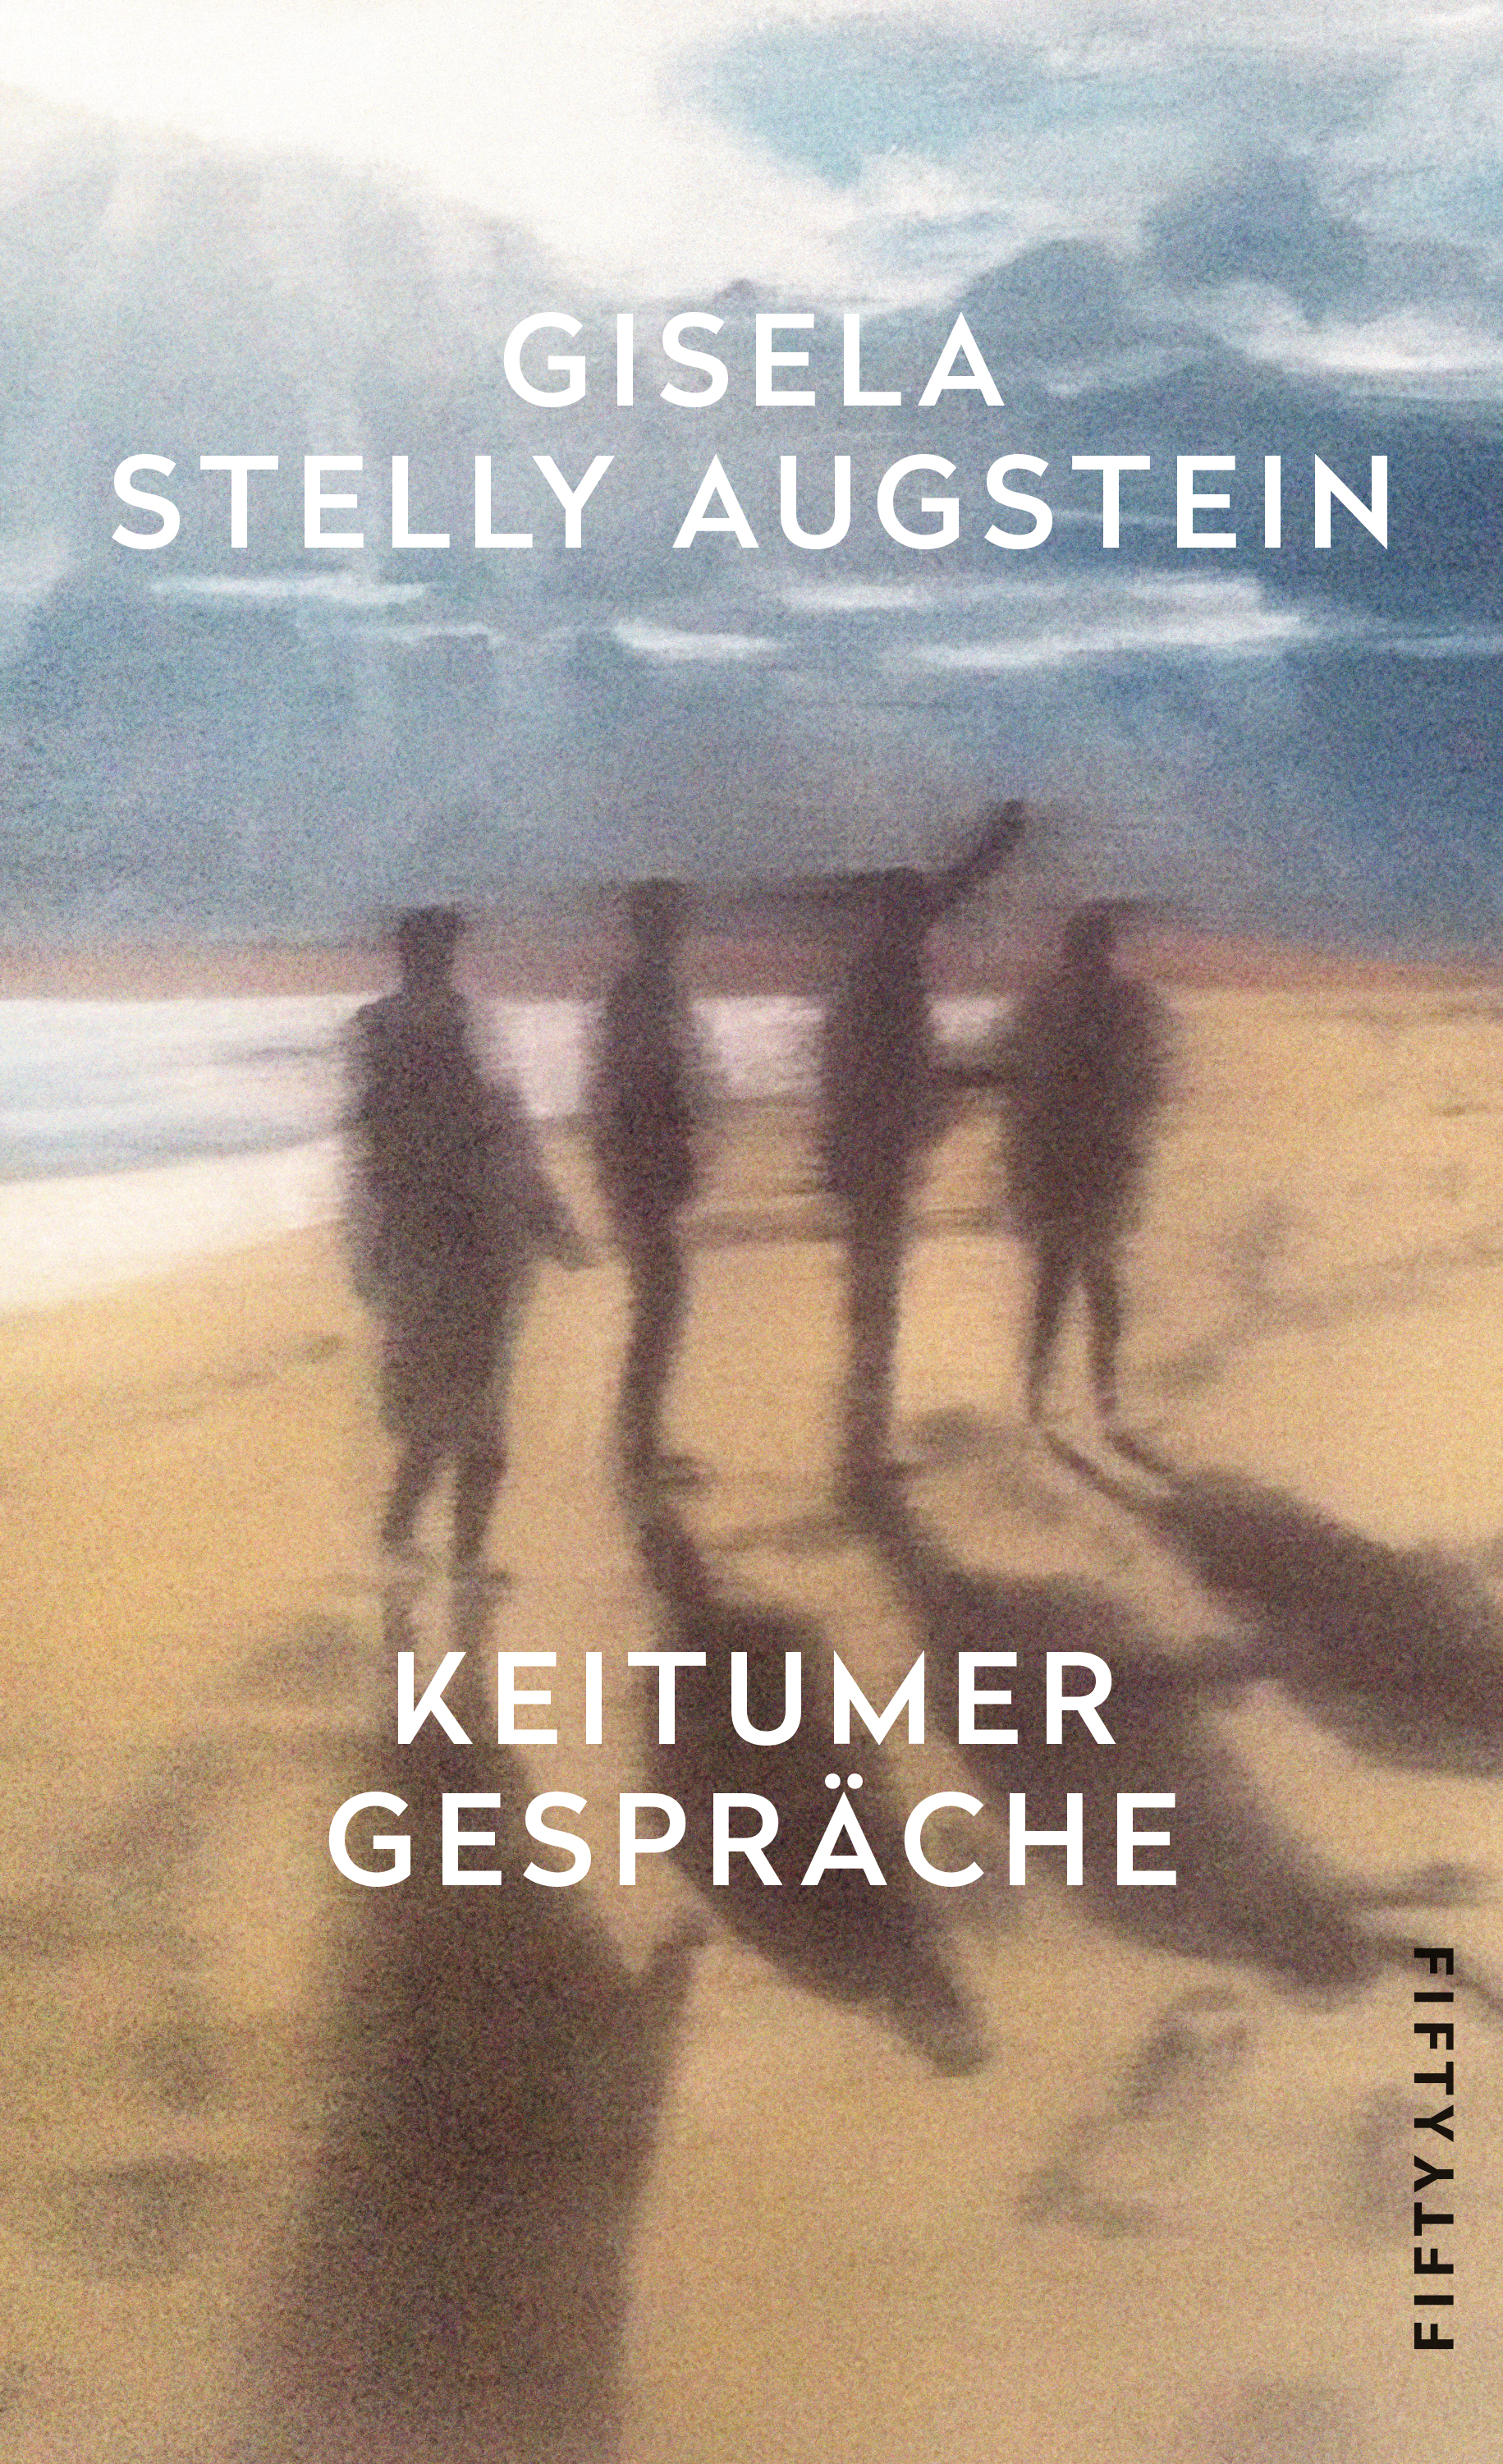 Gisela Stelly Augstein: Keitumer Gespräche, Bild: Berlin: Westend, 2018..